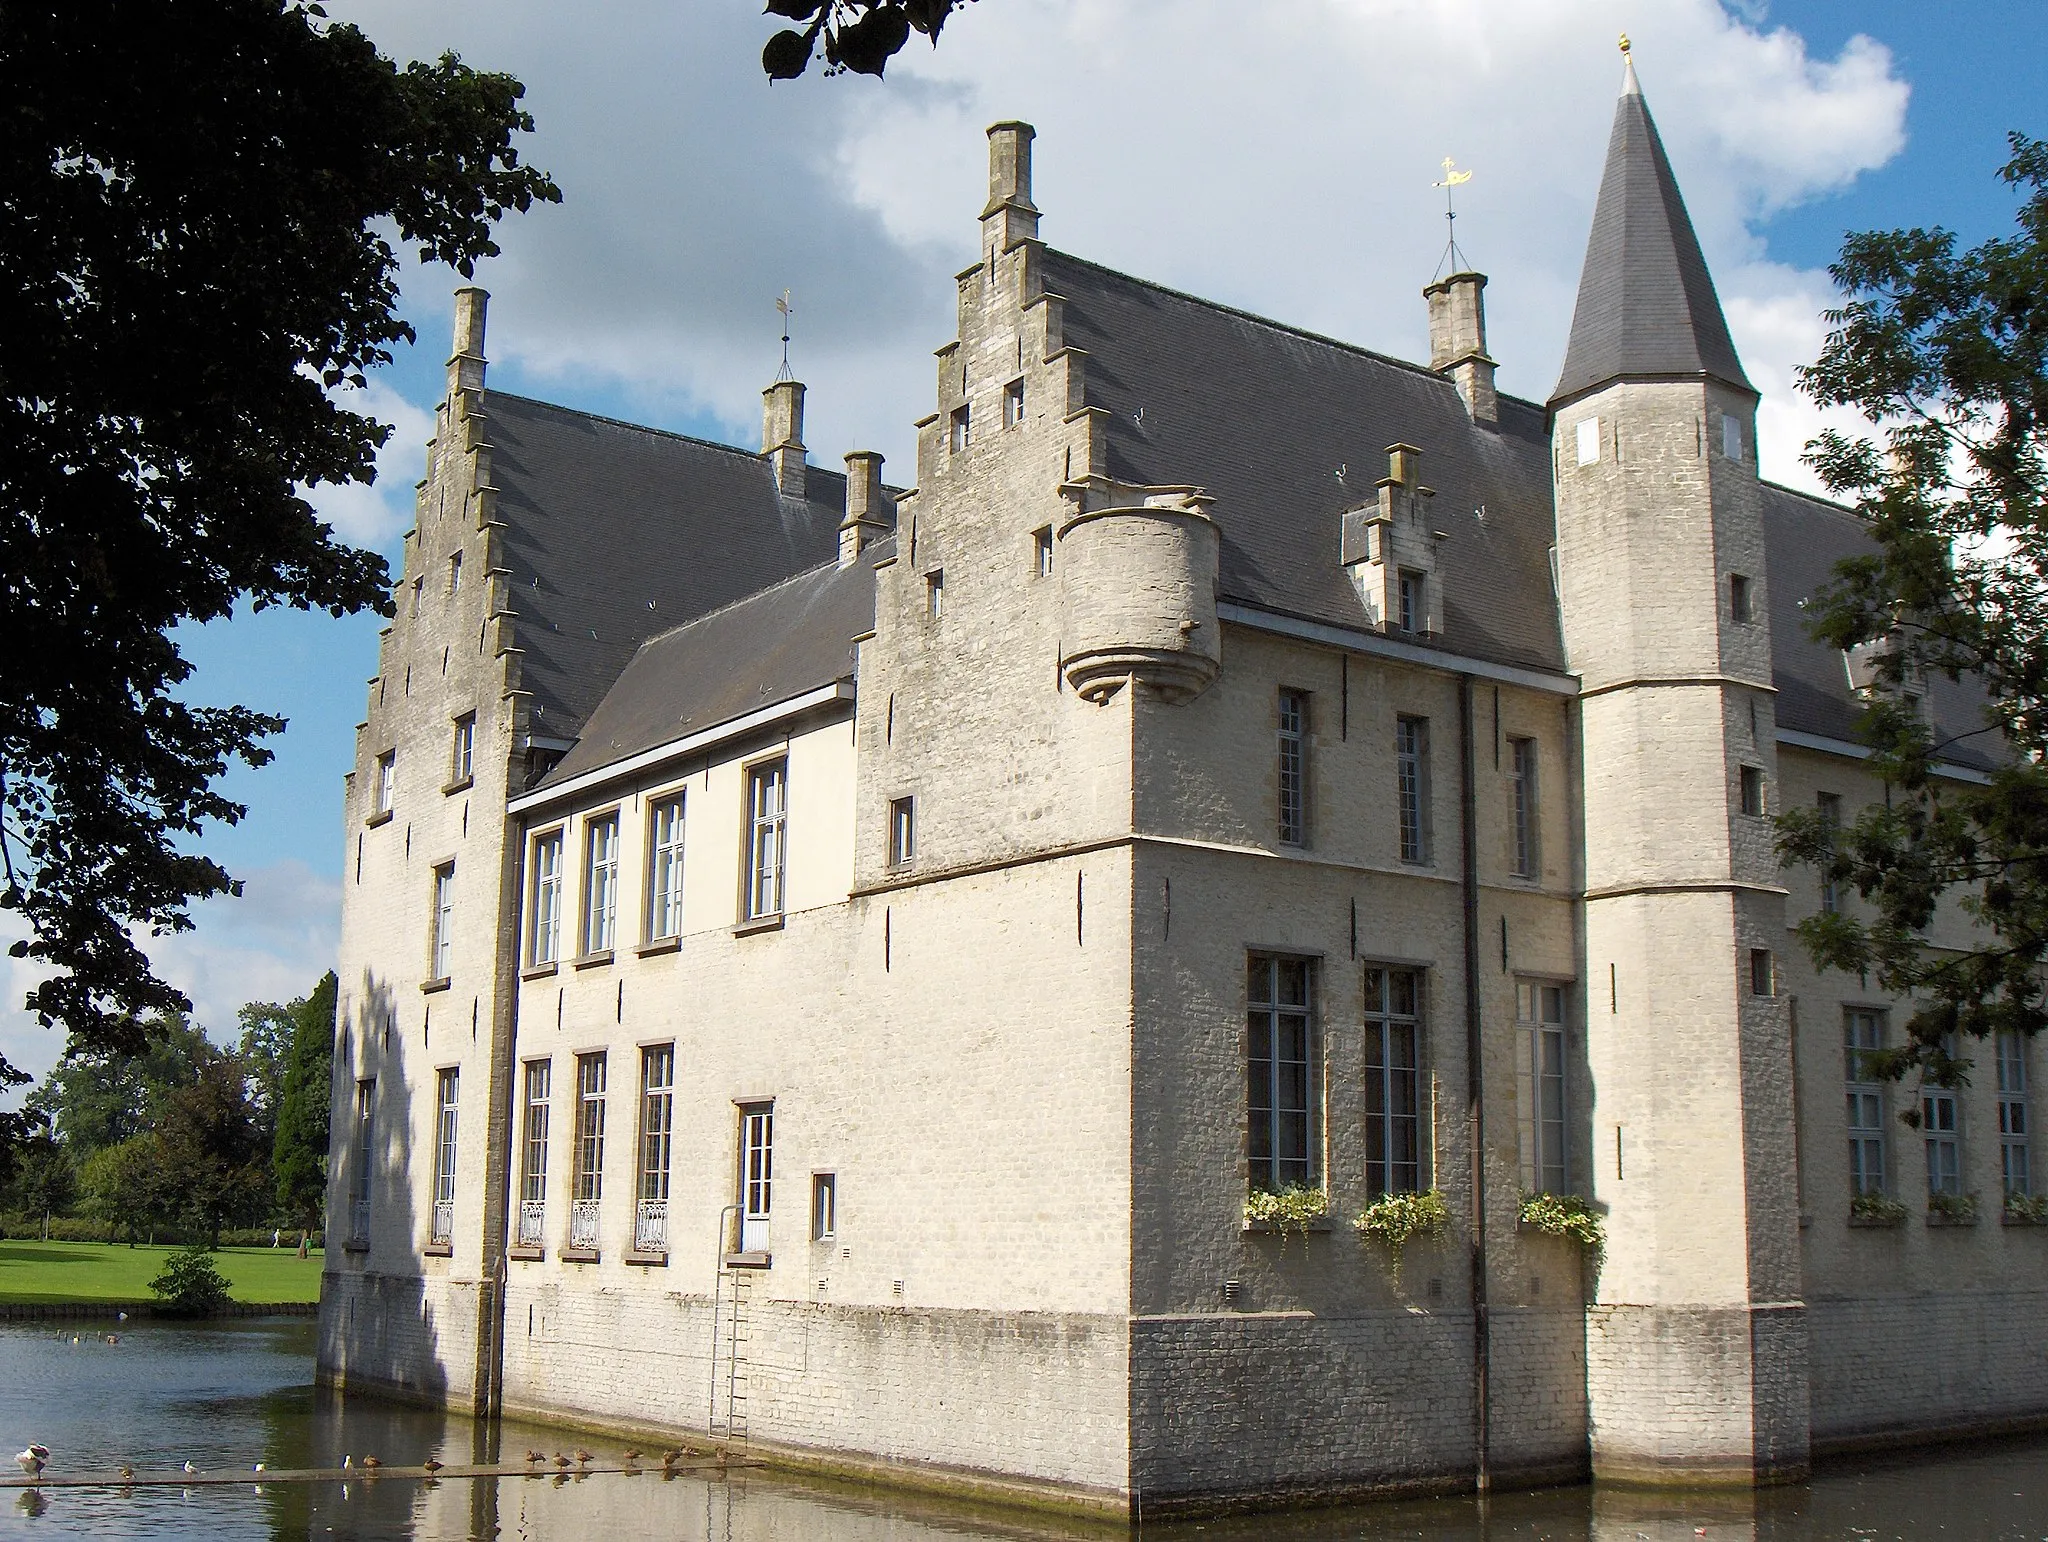 Photo showing: Bild: Beveren (Belgien), Schloss Cortewalle (Kasteel Cortewalle), ältester Teil aus dem 15. Jh., Blick von Süden

Fotograf: Friedrich Tellberg
Datum: 14. August 2005